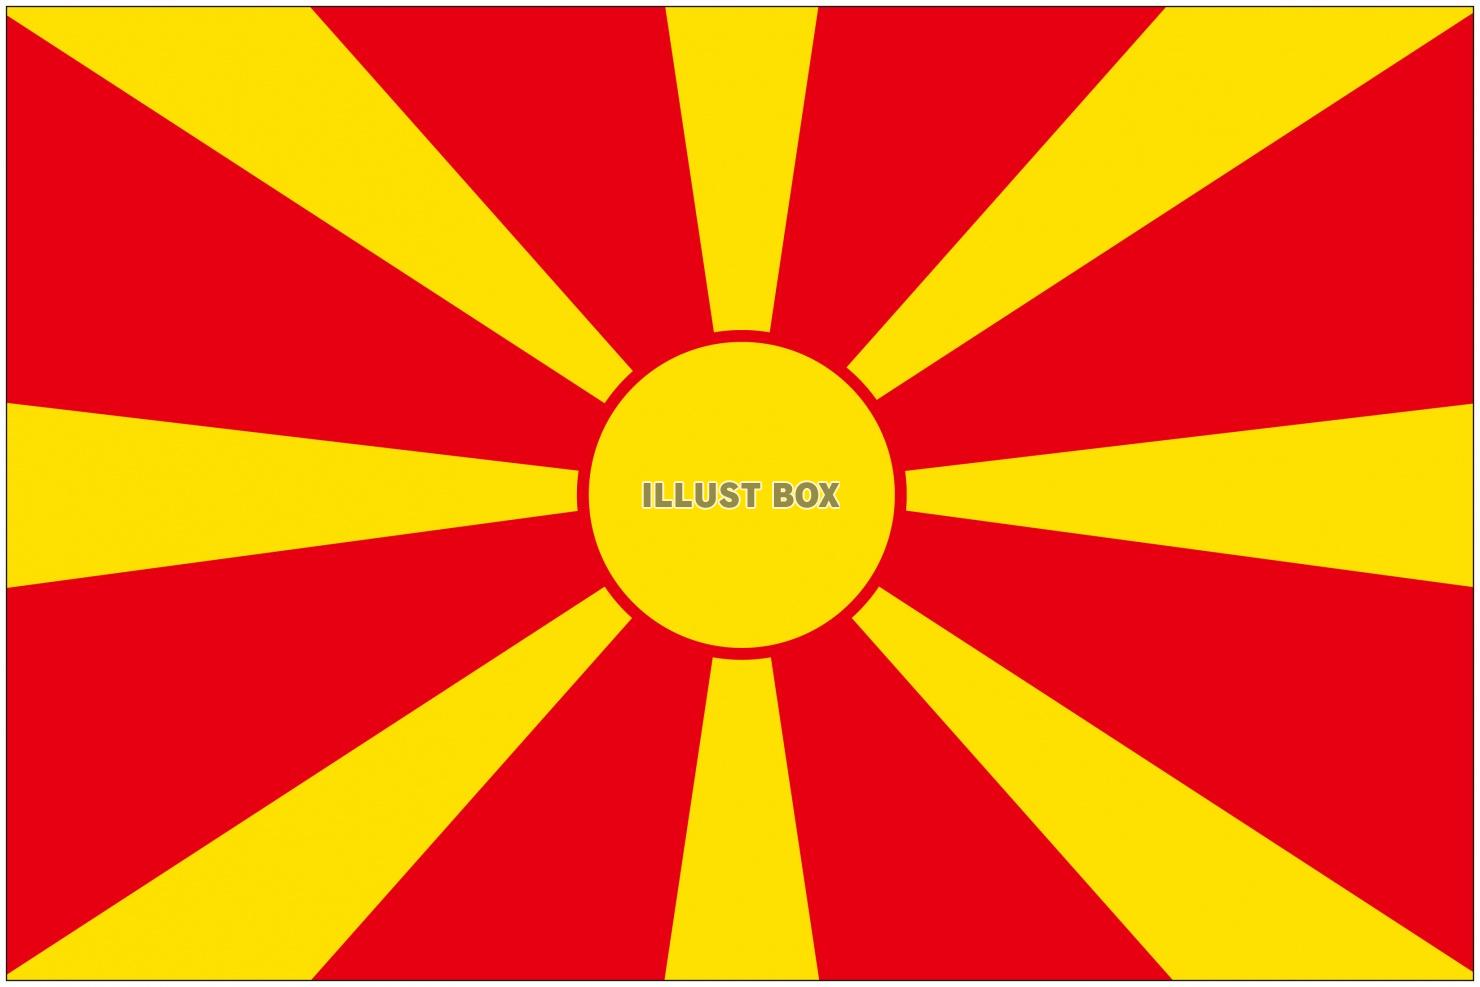 マケドニアの国旗